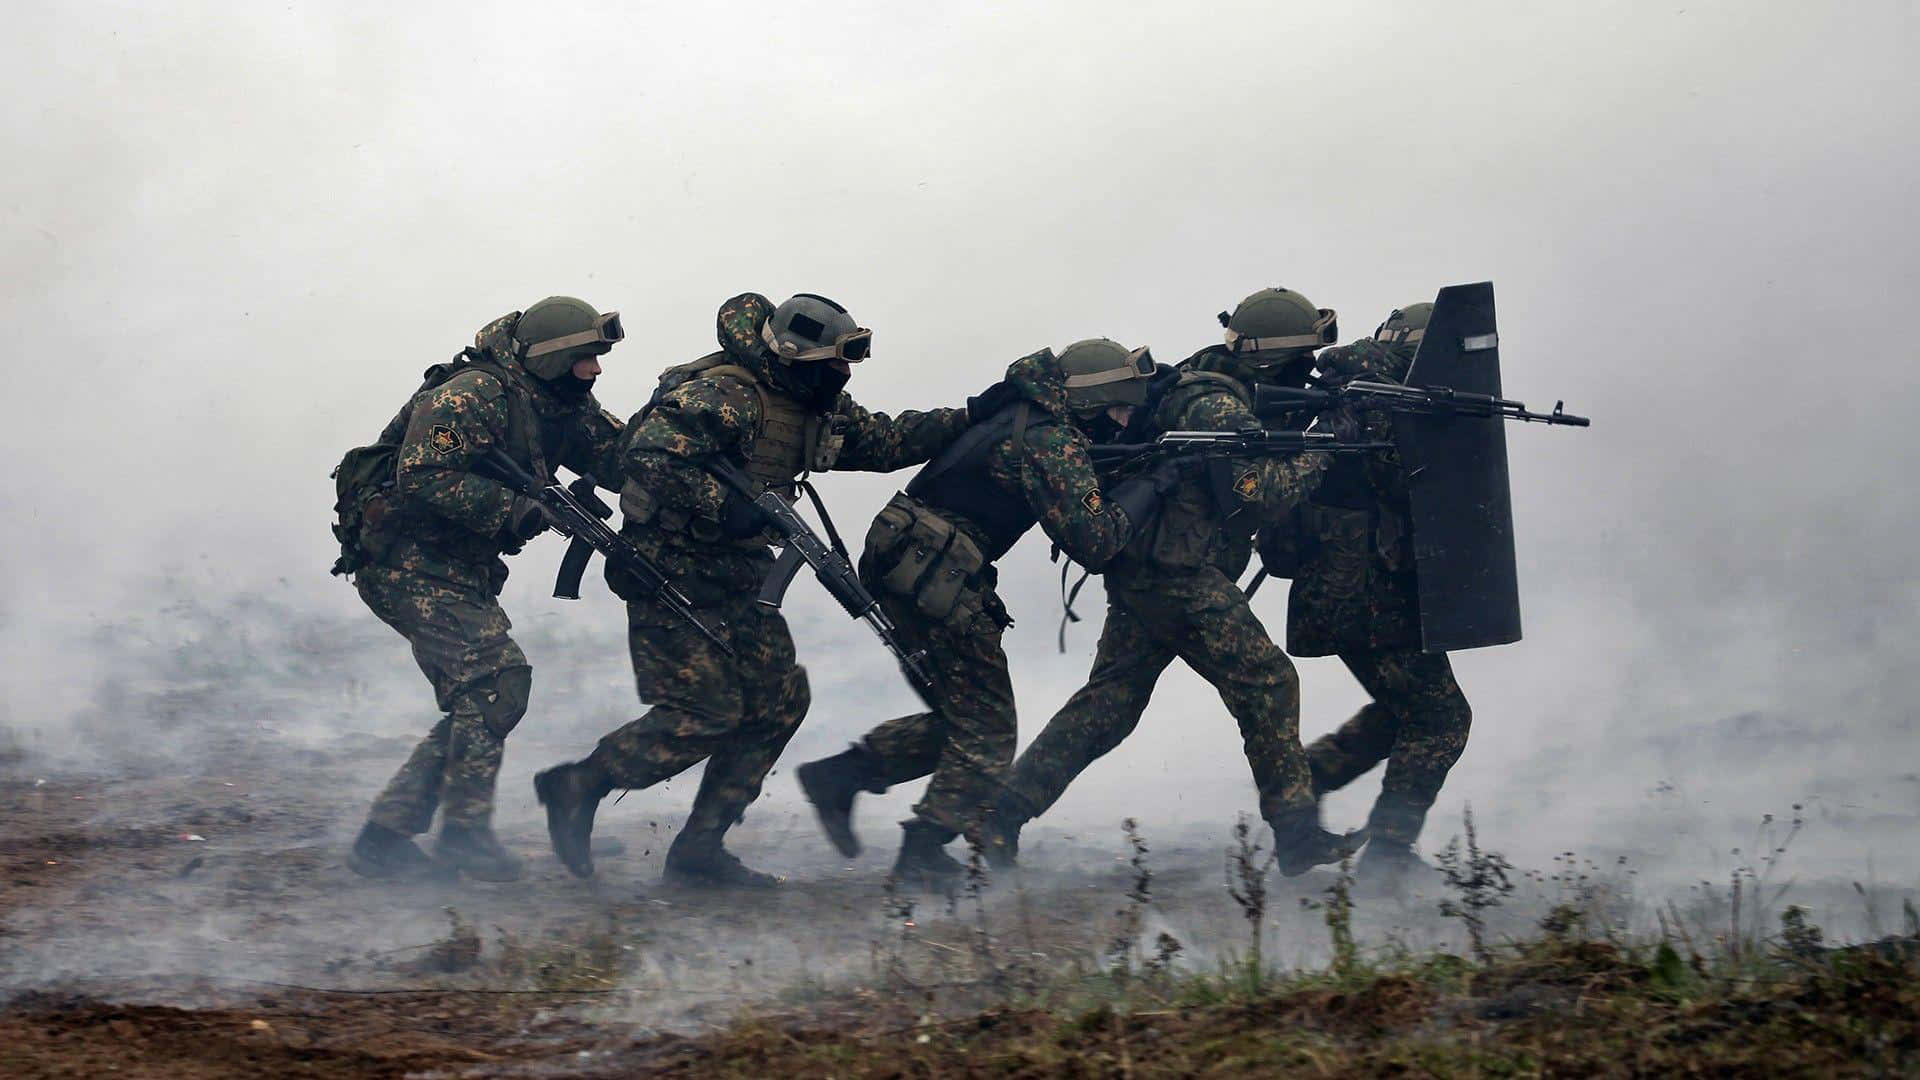 Ungruppo Di Soldati Sta Correndo Attraverso Un Campo Di Fumo.